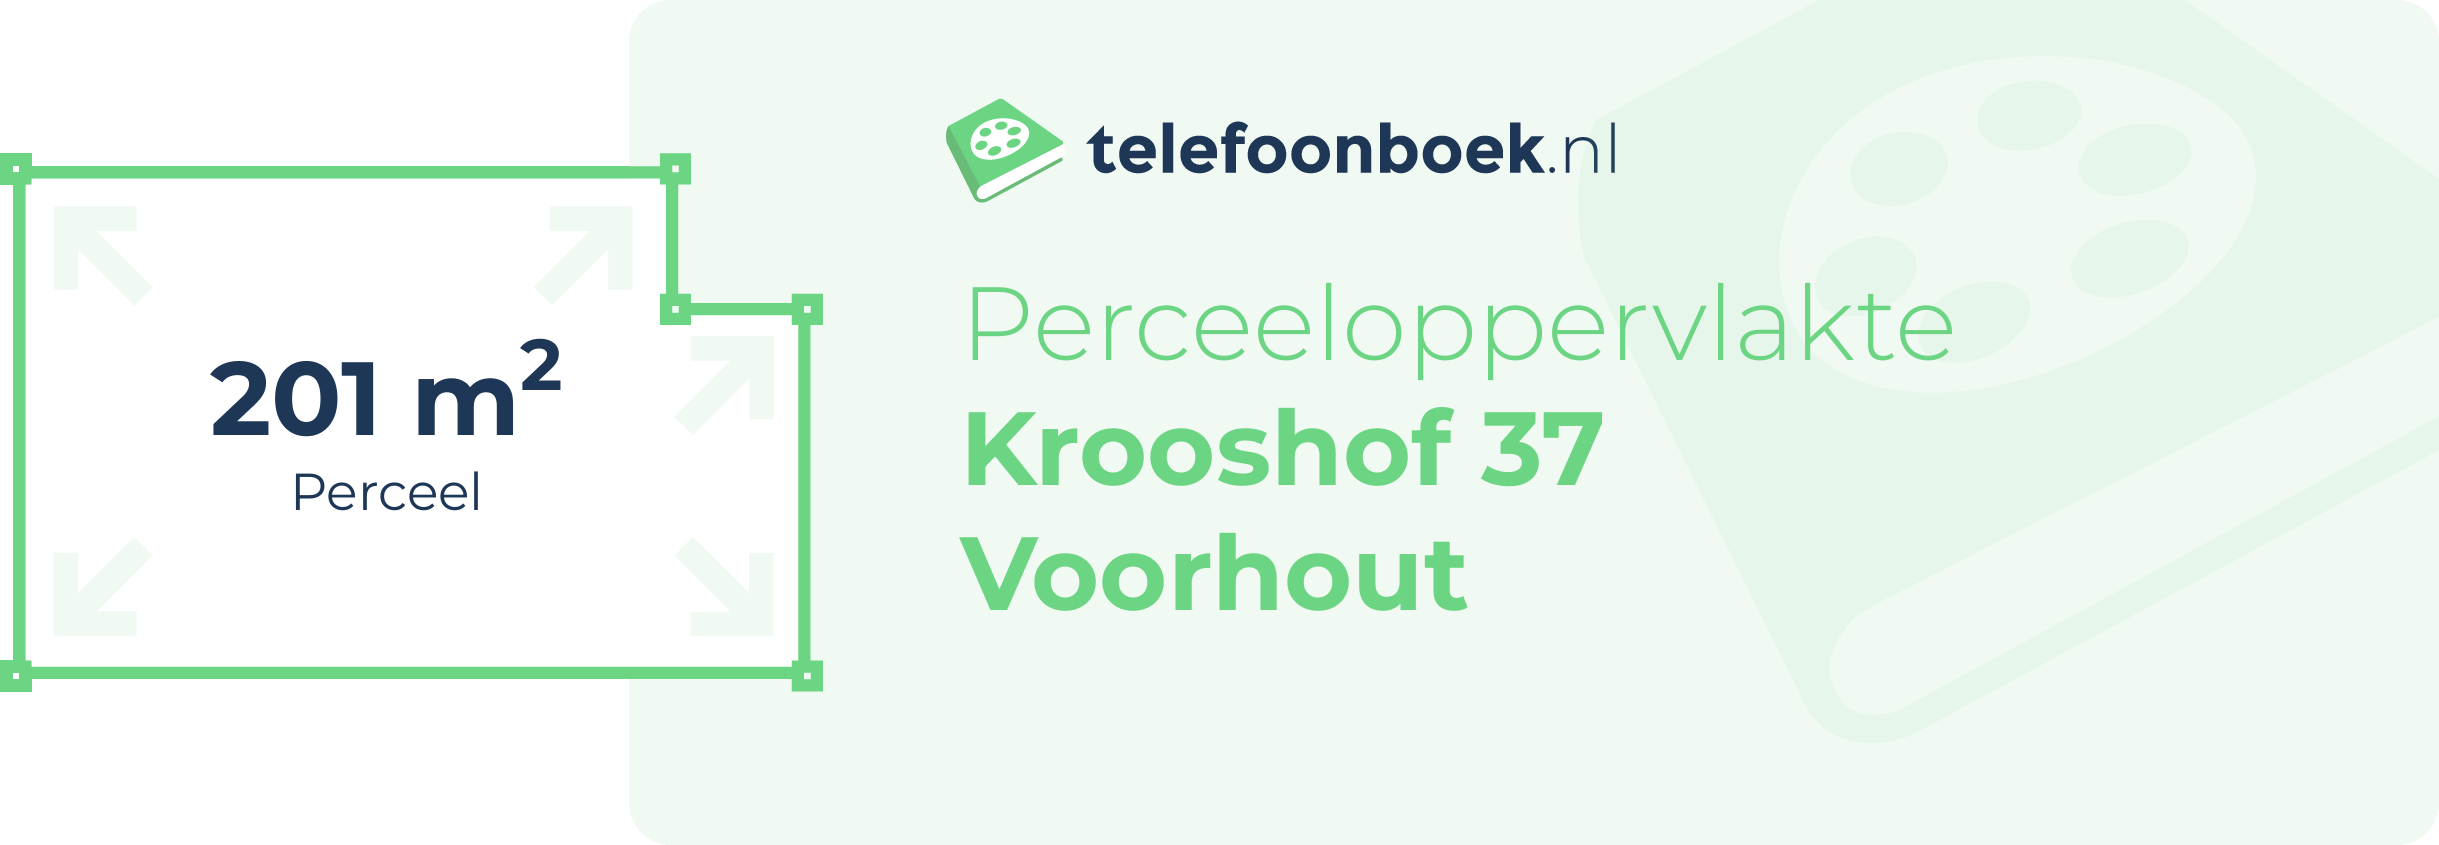 Perceeloppervlakte Krooshof 37 Voorhout